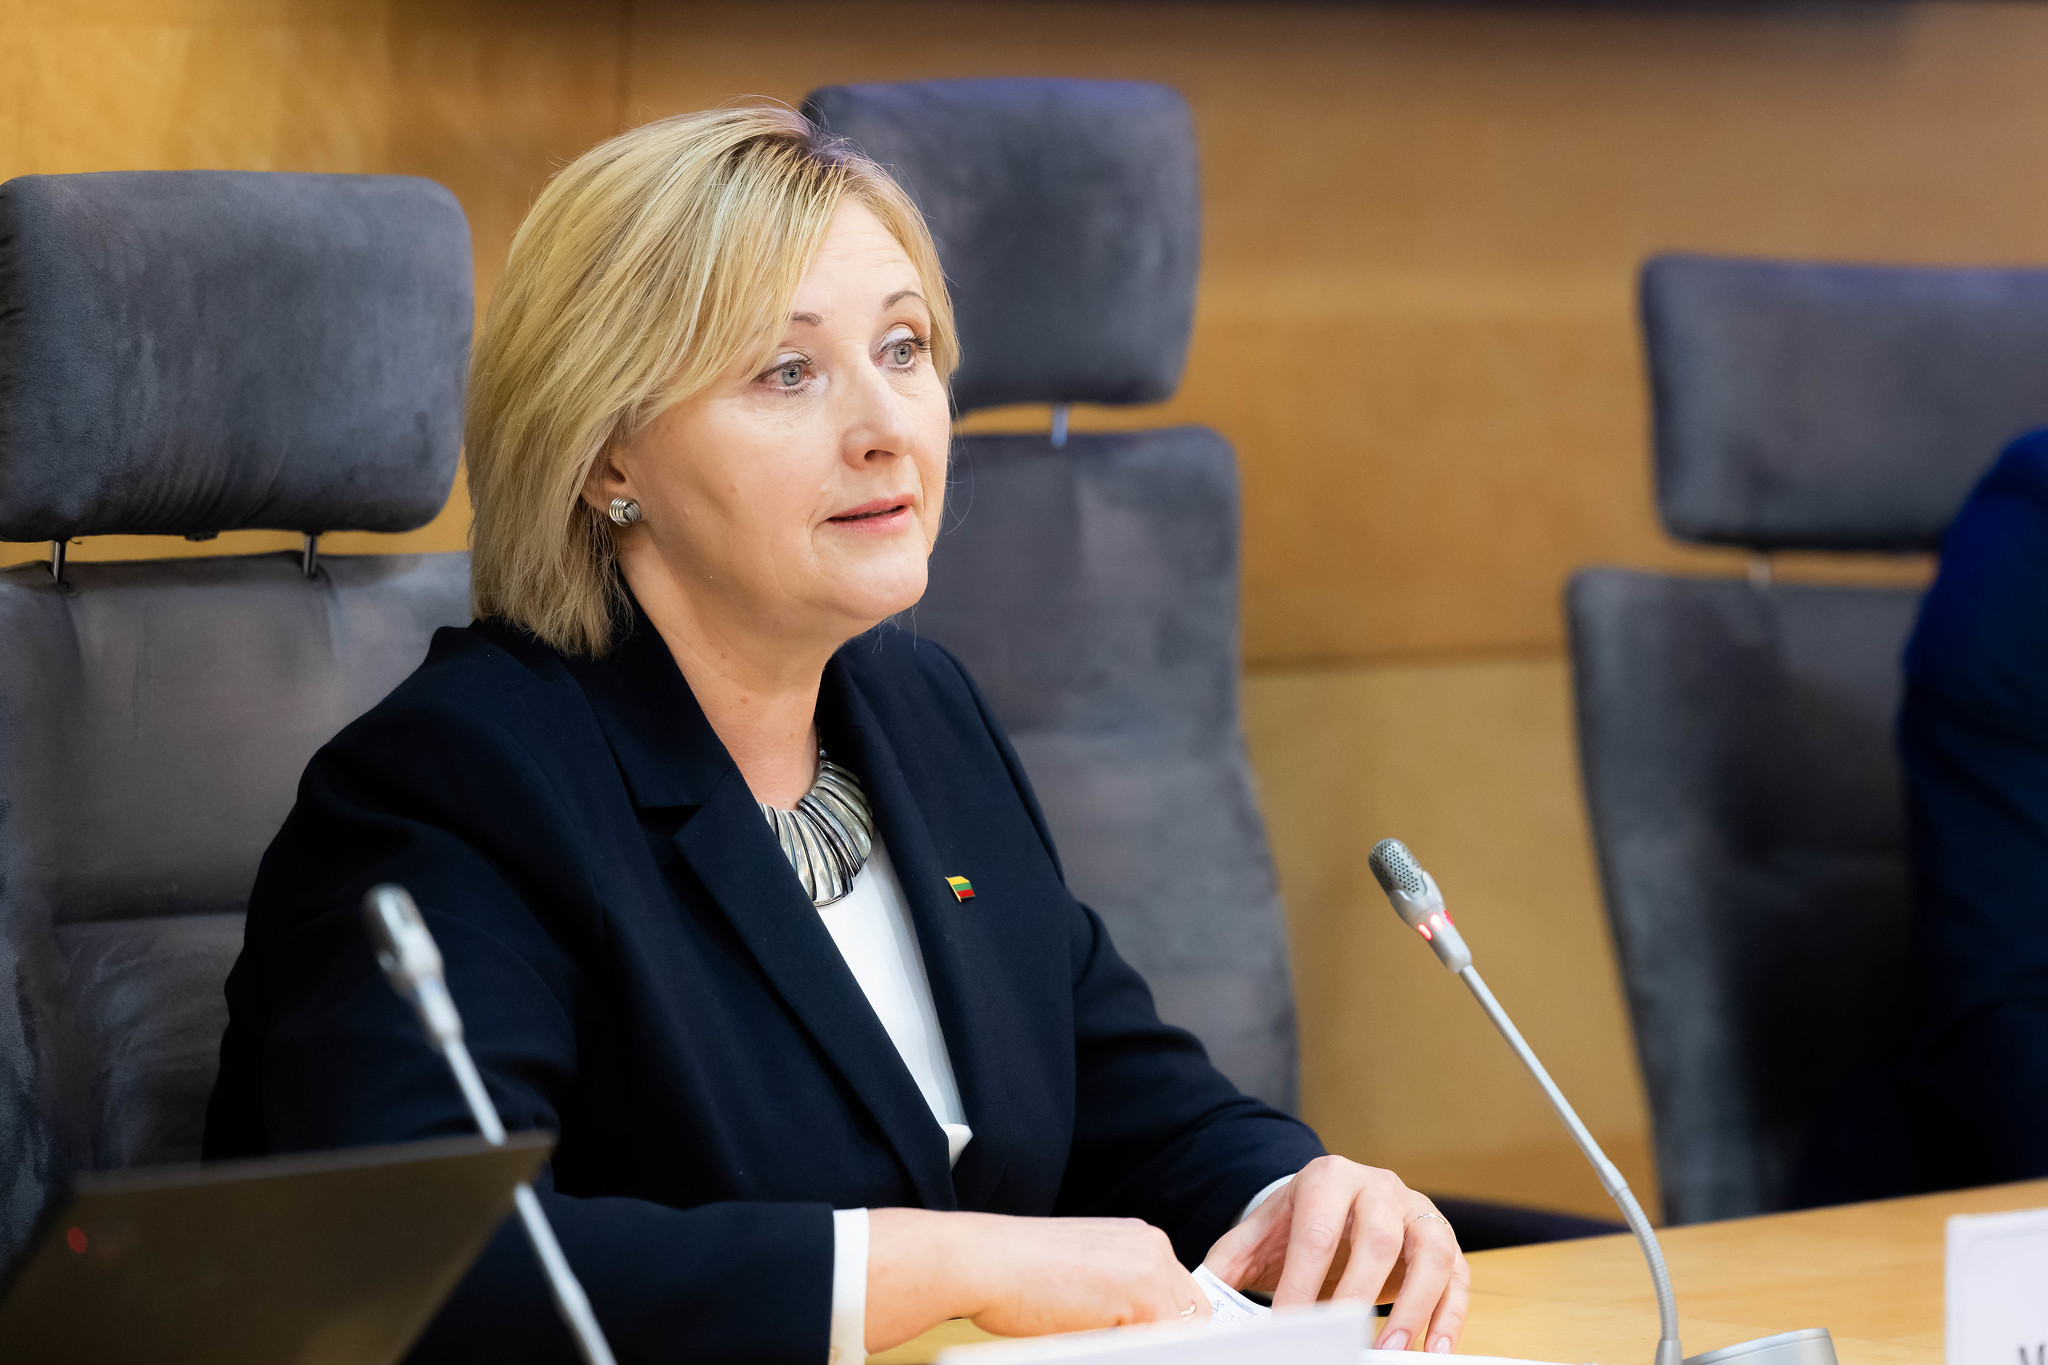 Seimo narė Laima Mogenienė: smulkiam ir vidutiniam verslui reikalingas sisteminis užtarimas